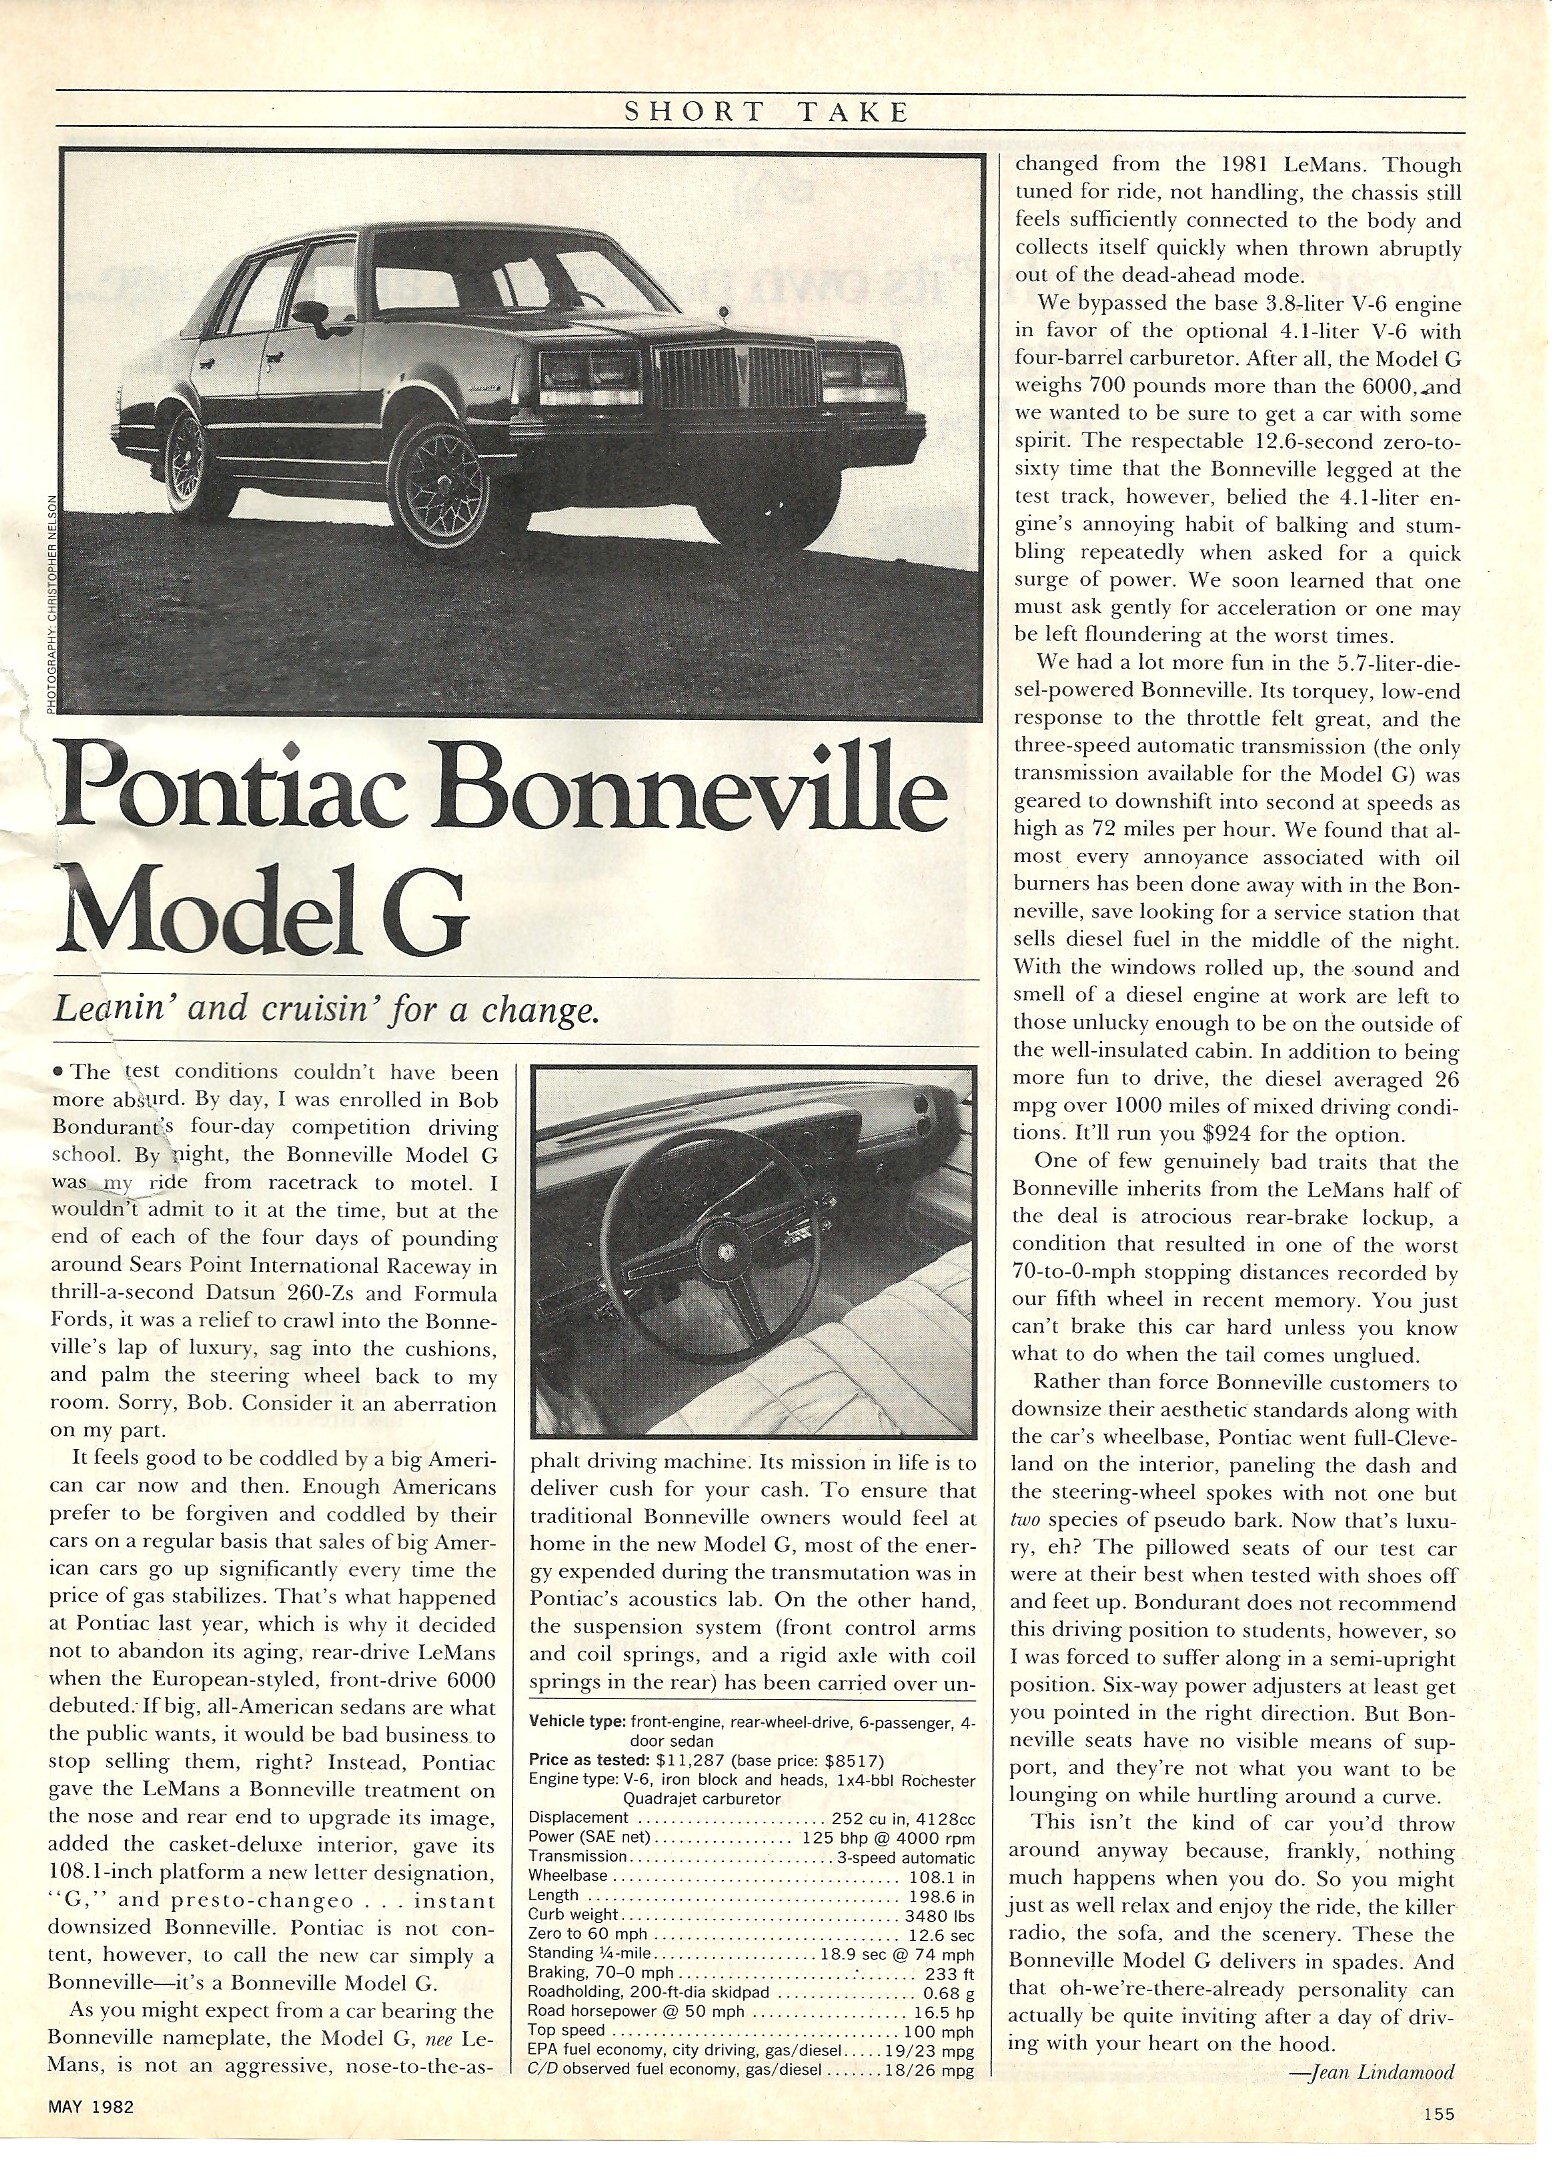 1982 Bonneville Model G.jpg